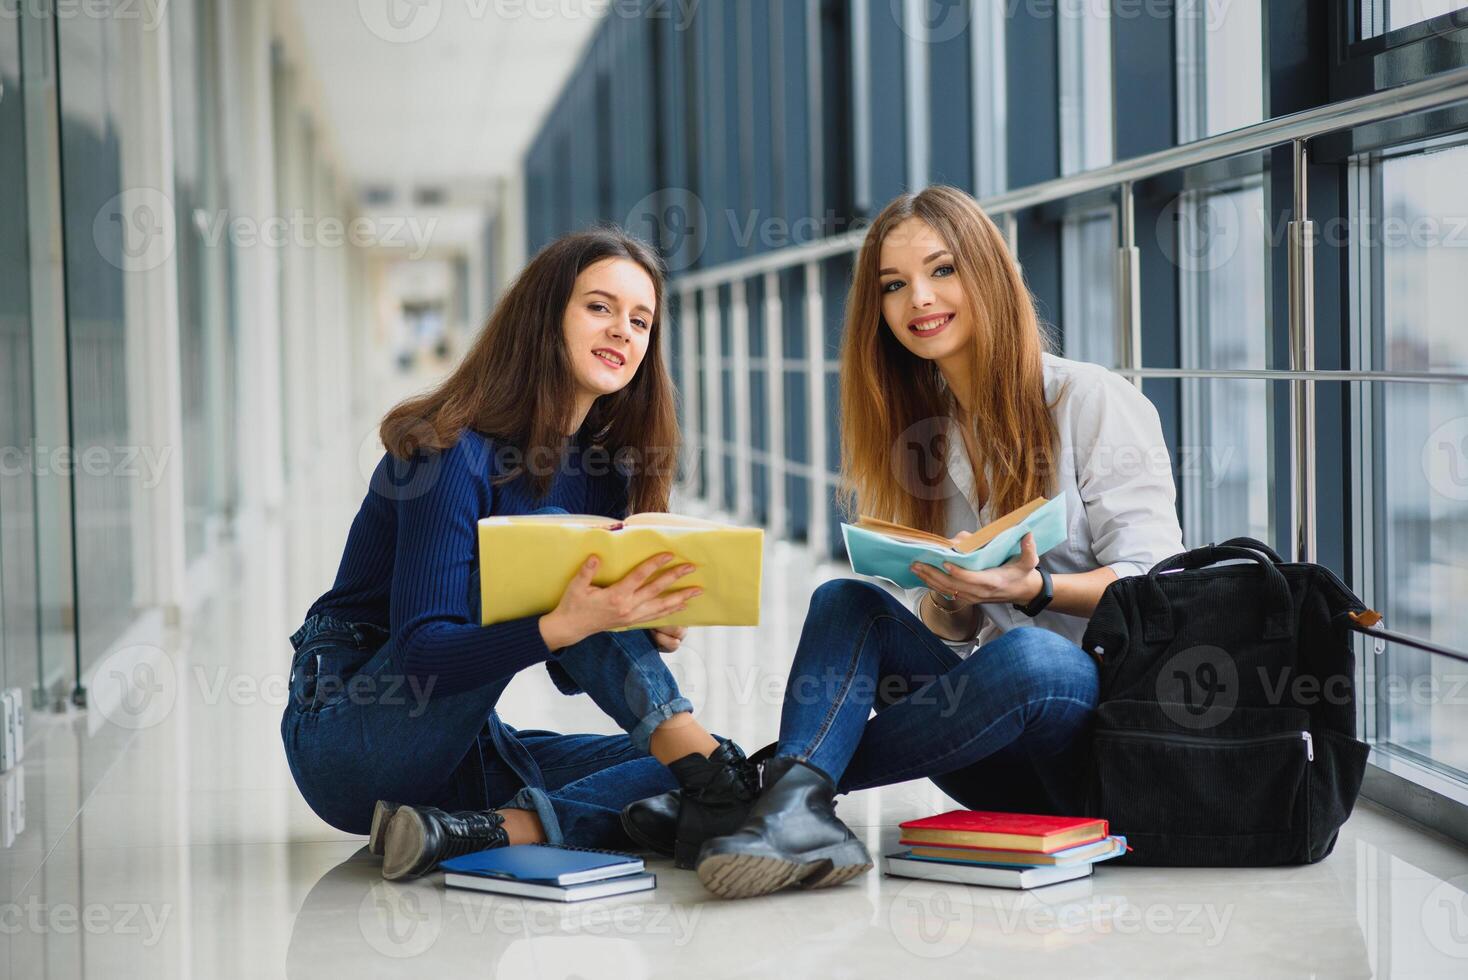 deux jolie femelle élèves avec livres séance sur le sol dans le Université couloir photo